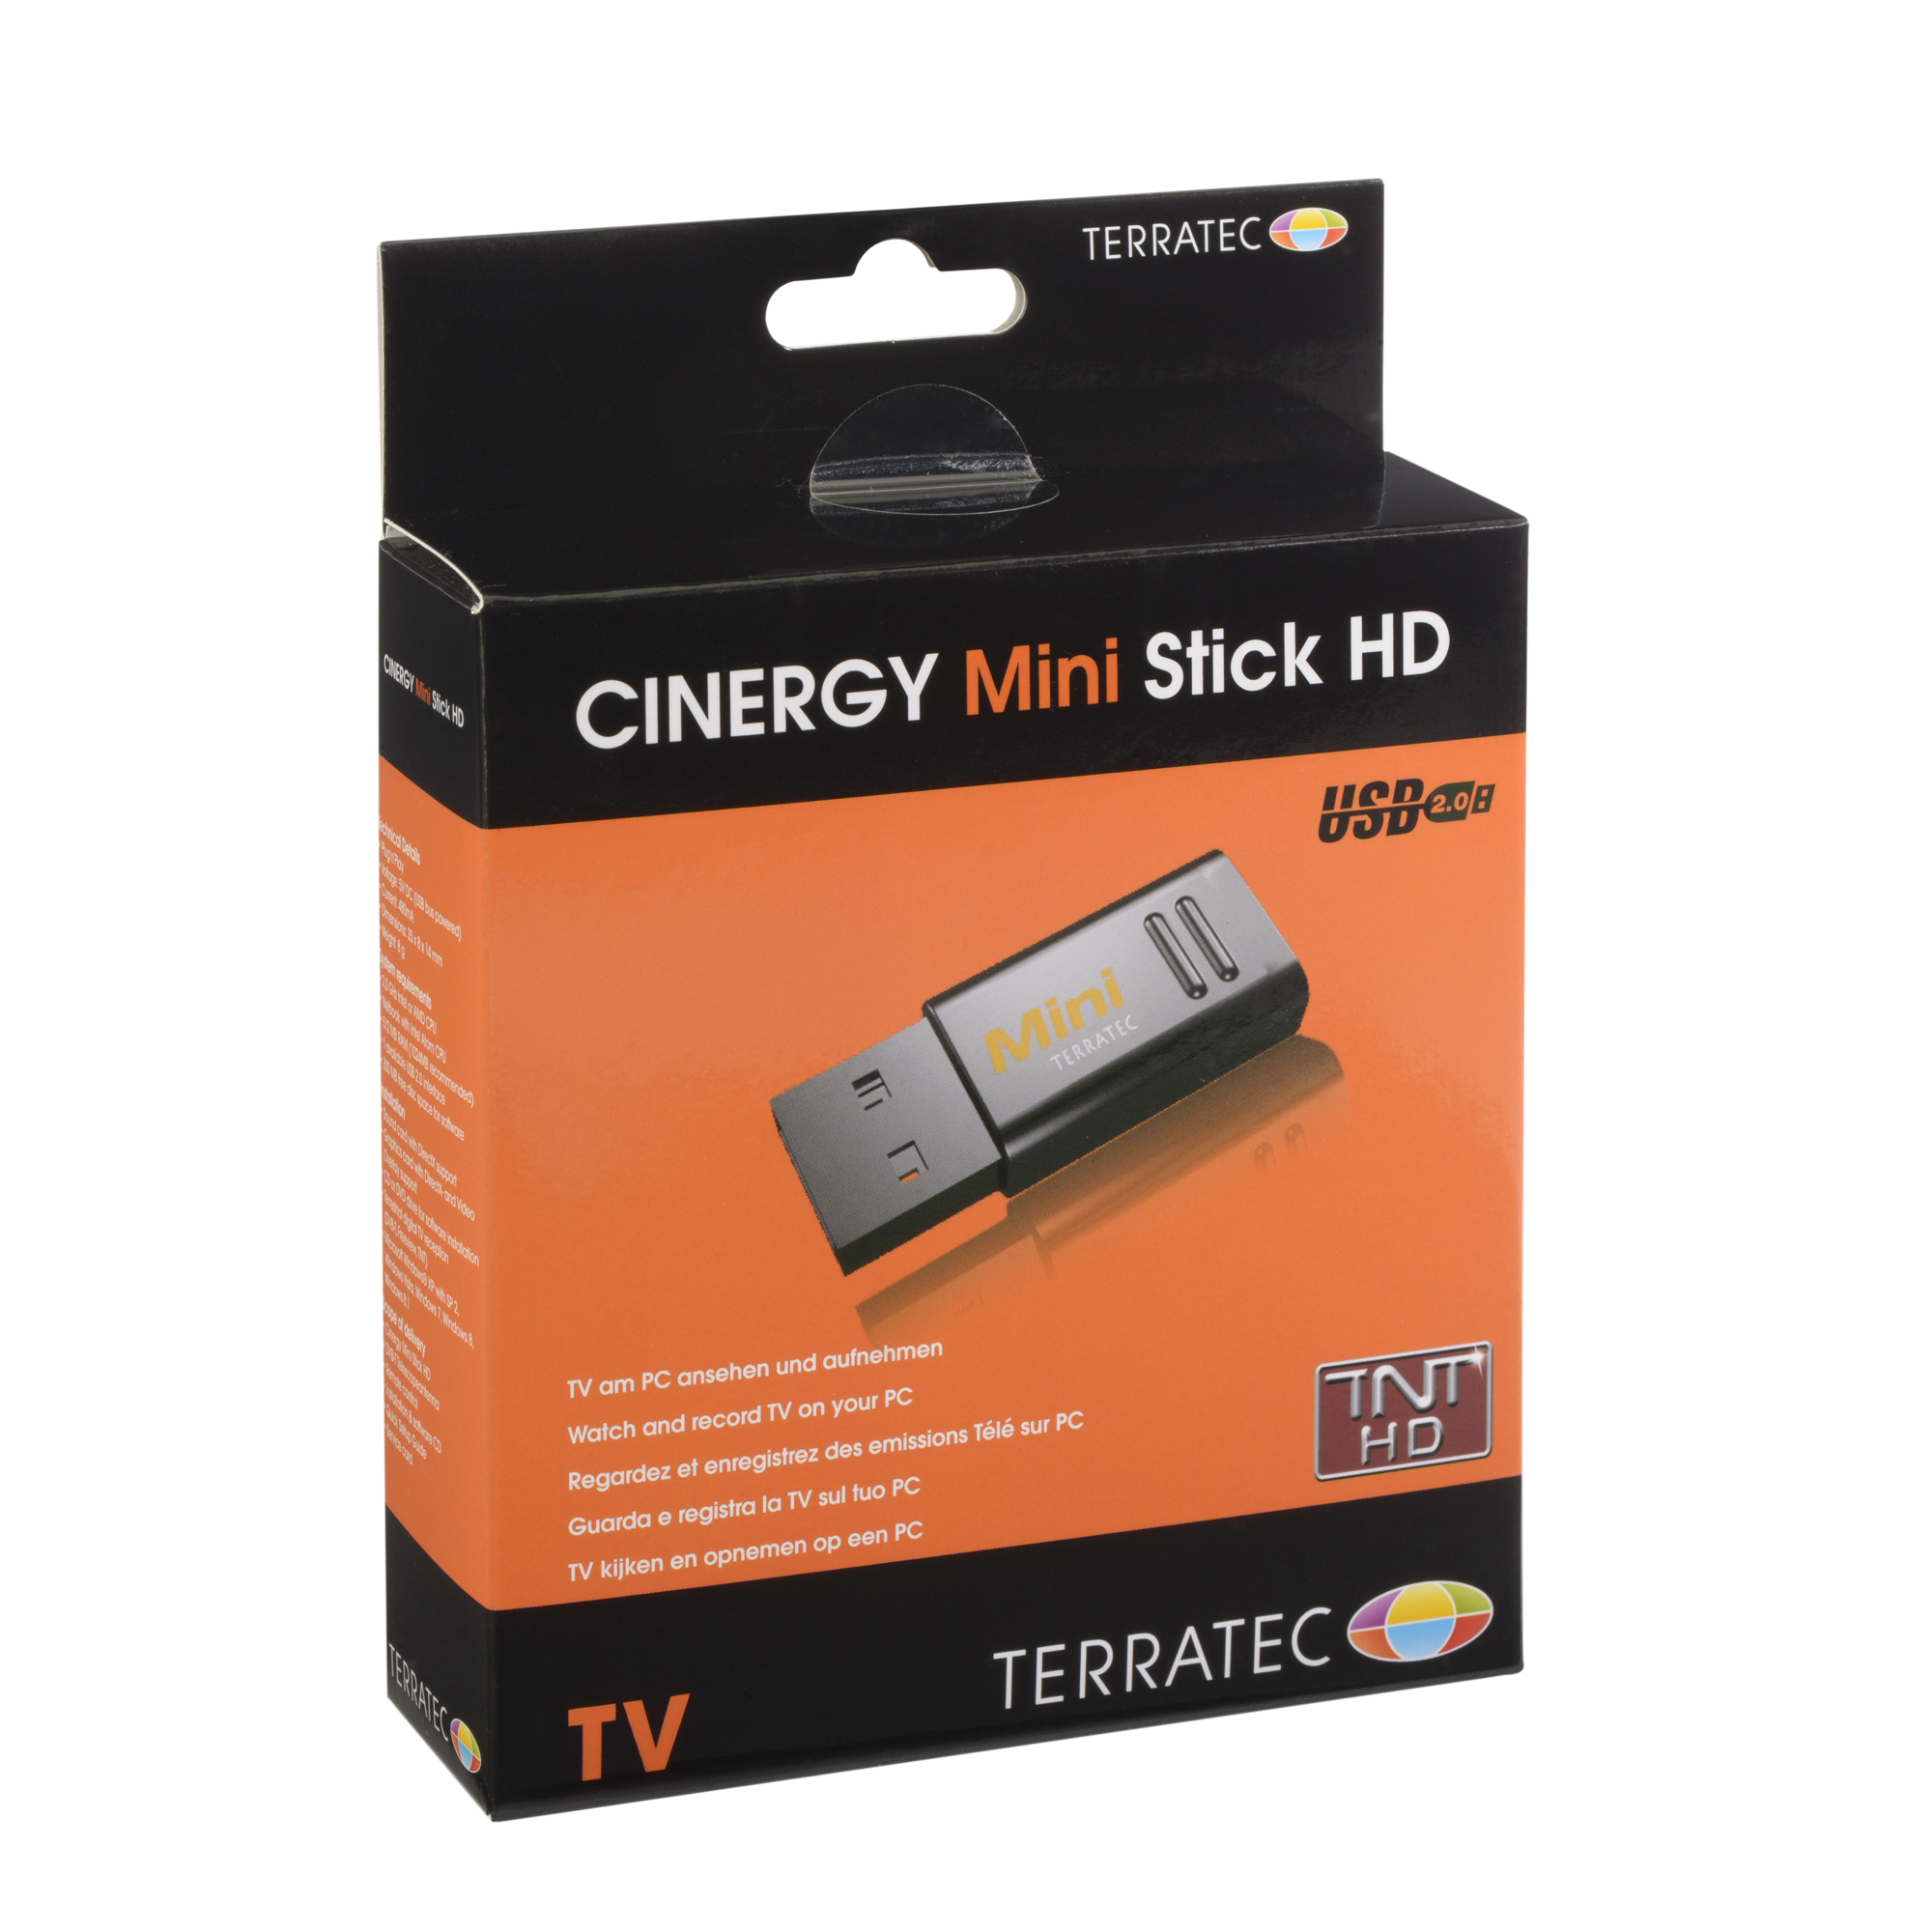 TerraTec CINERGY TC2 Clé USB DVB-C/DVBT 2 TV Mini récepteur – transforme  Tablette, Ordinateur Portable ou PC en récepteur Radio HD TV 193534 :  : High-Tech